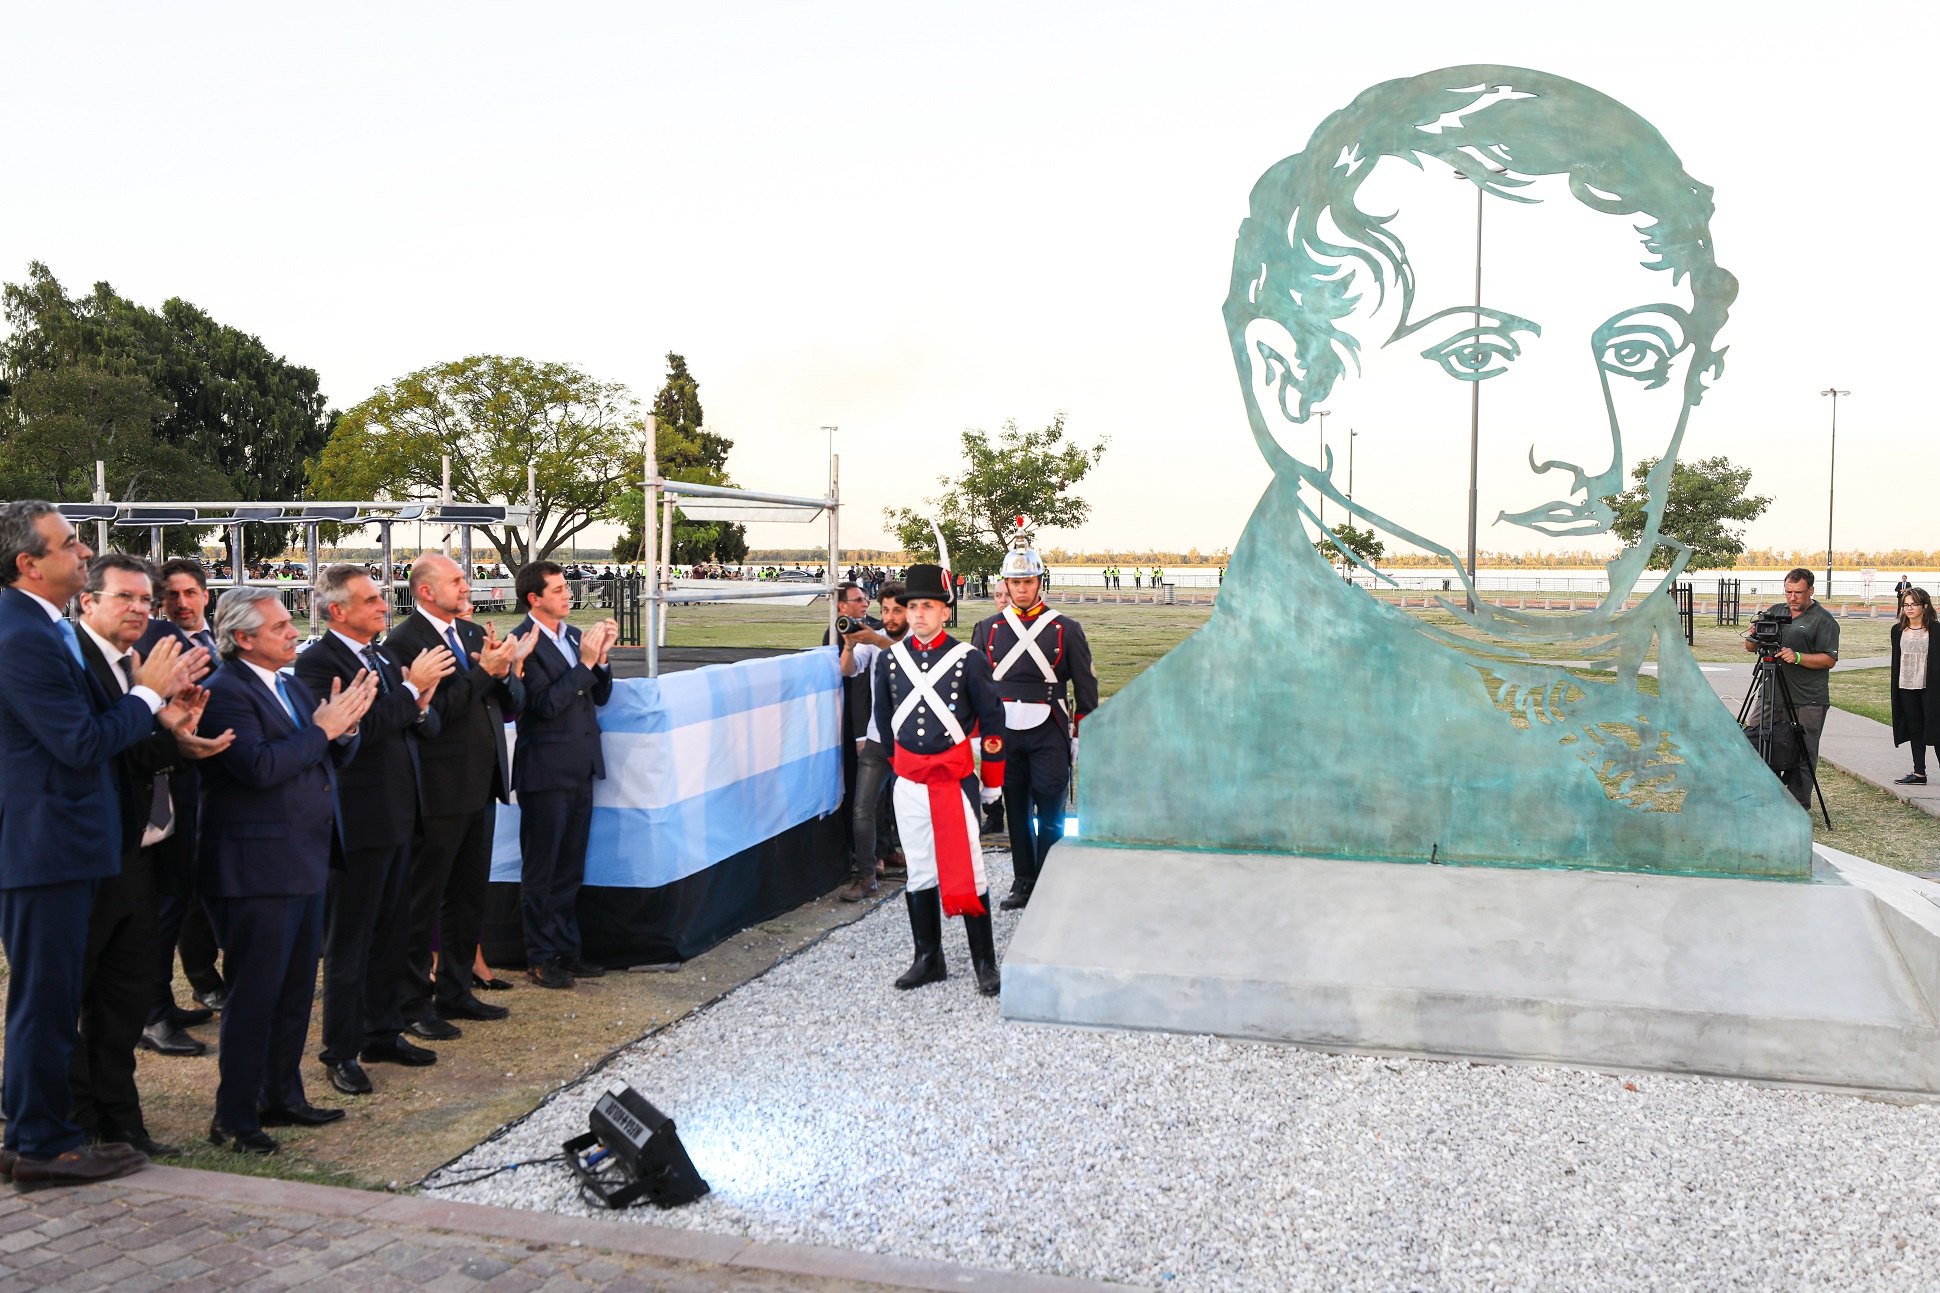 Compromiso del Presidente en Rosario: “La Argentina no tiene espacio para soportar al crimen organizado”